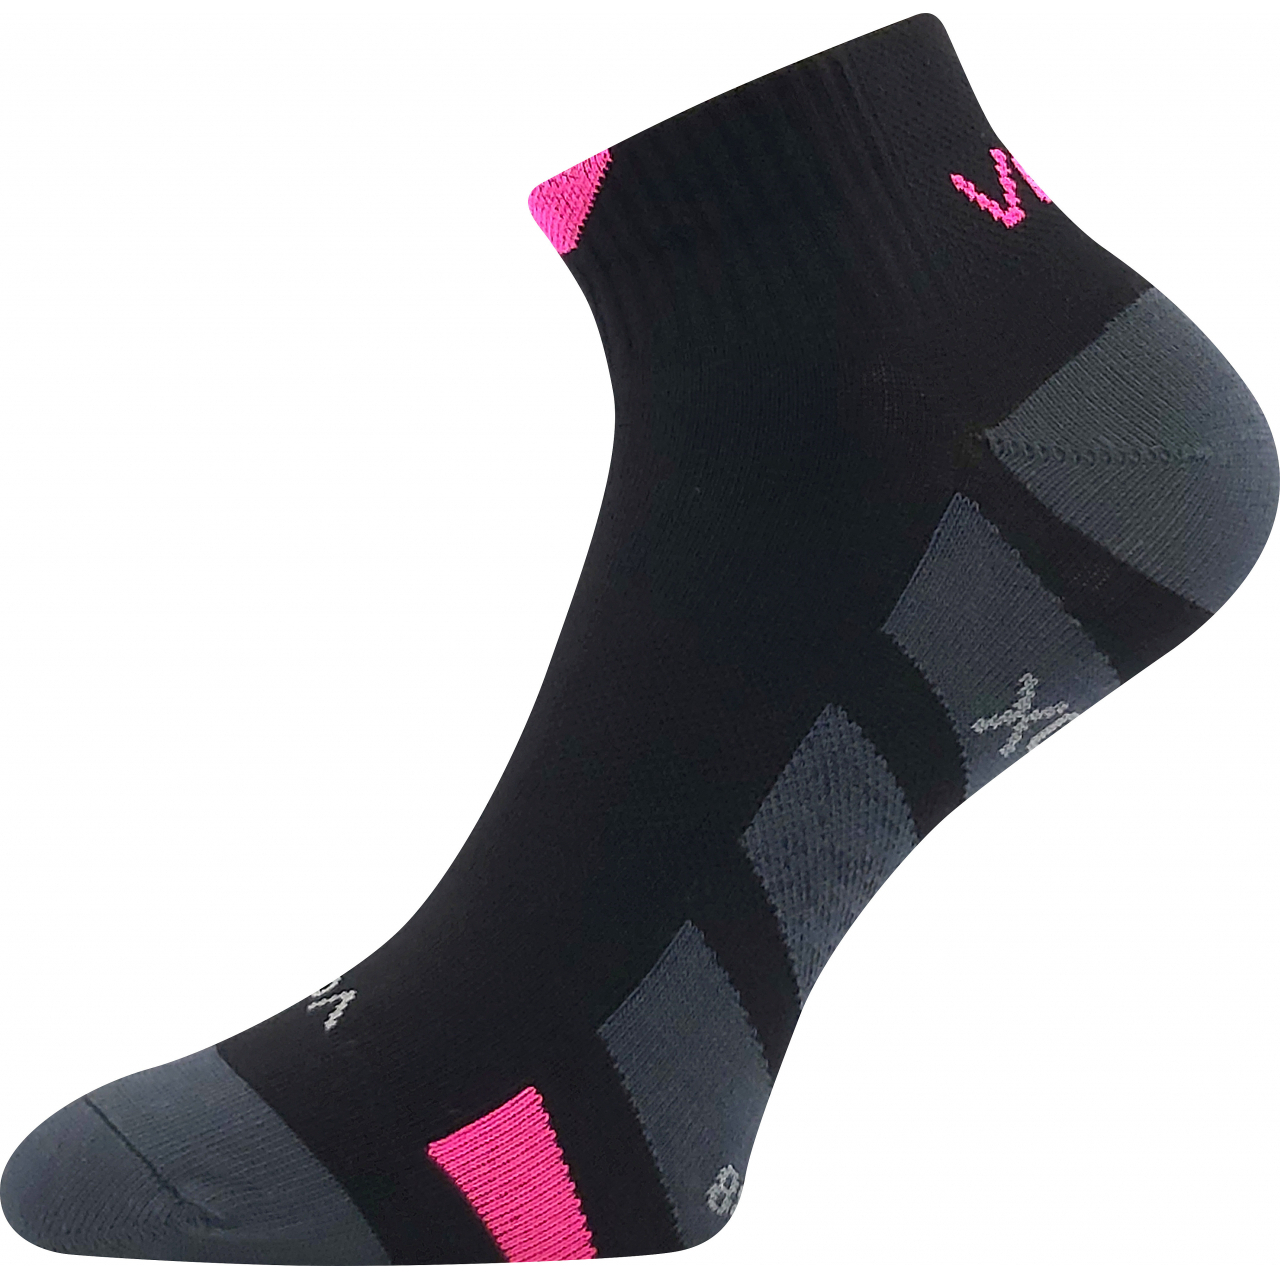 Ponožky unisex slabé Voxx Gastm - černé-růžové, 39-42